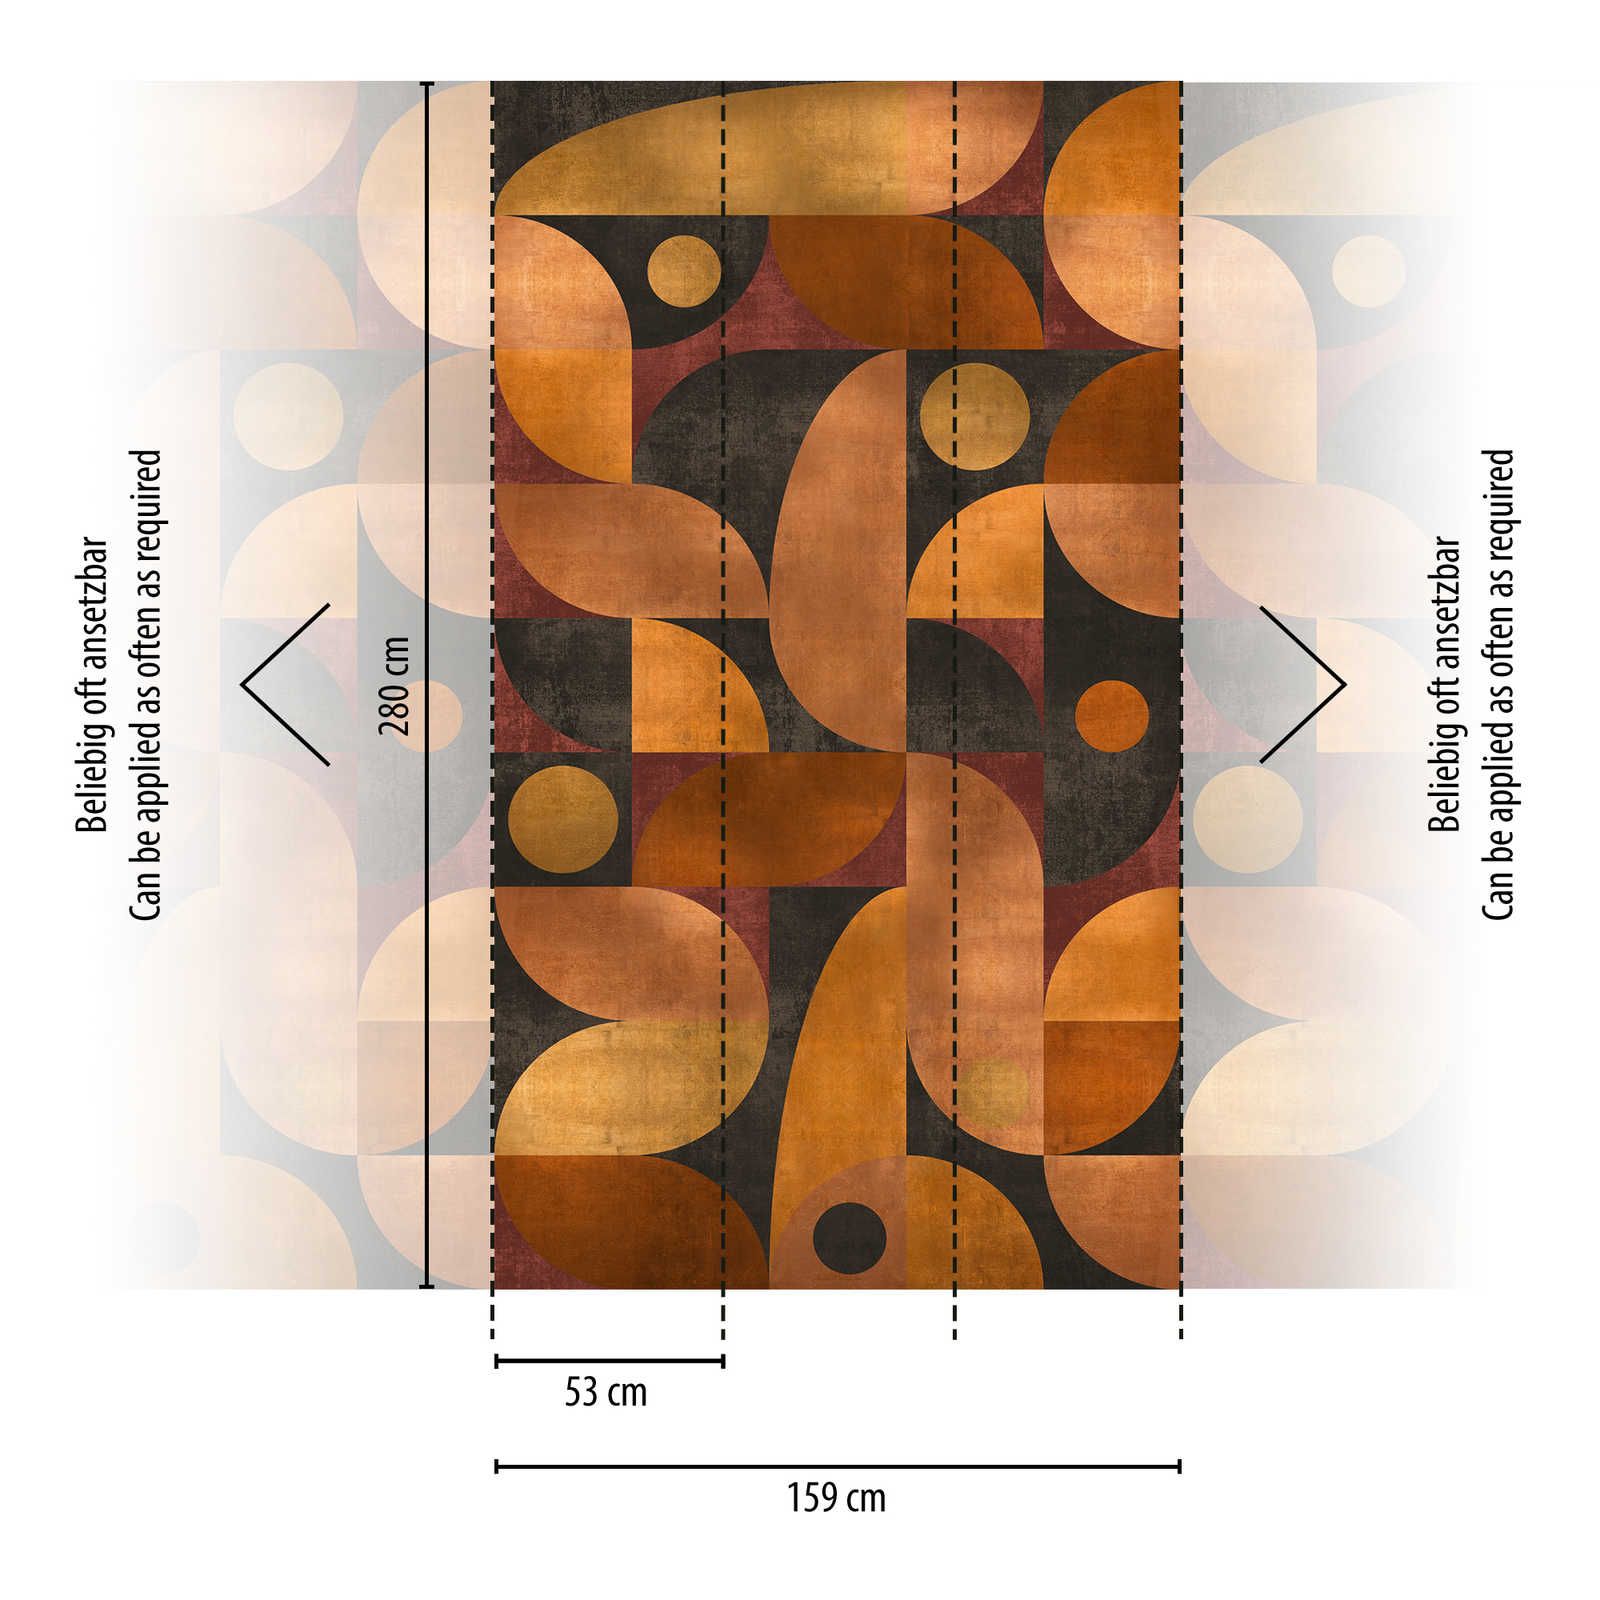             Vliesbehang in warme tinten met grafisch rond patroon - oranje, bruin, rood
        